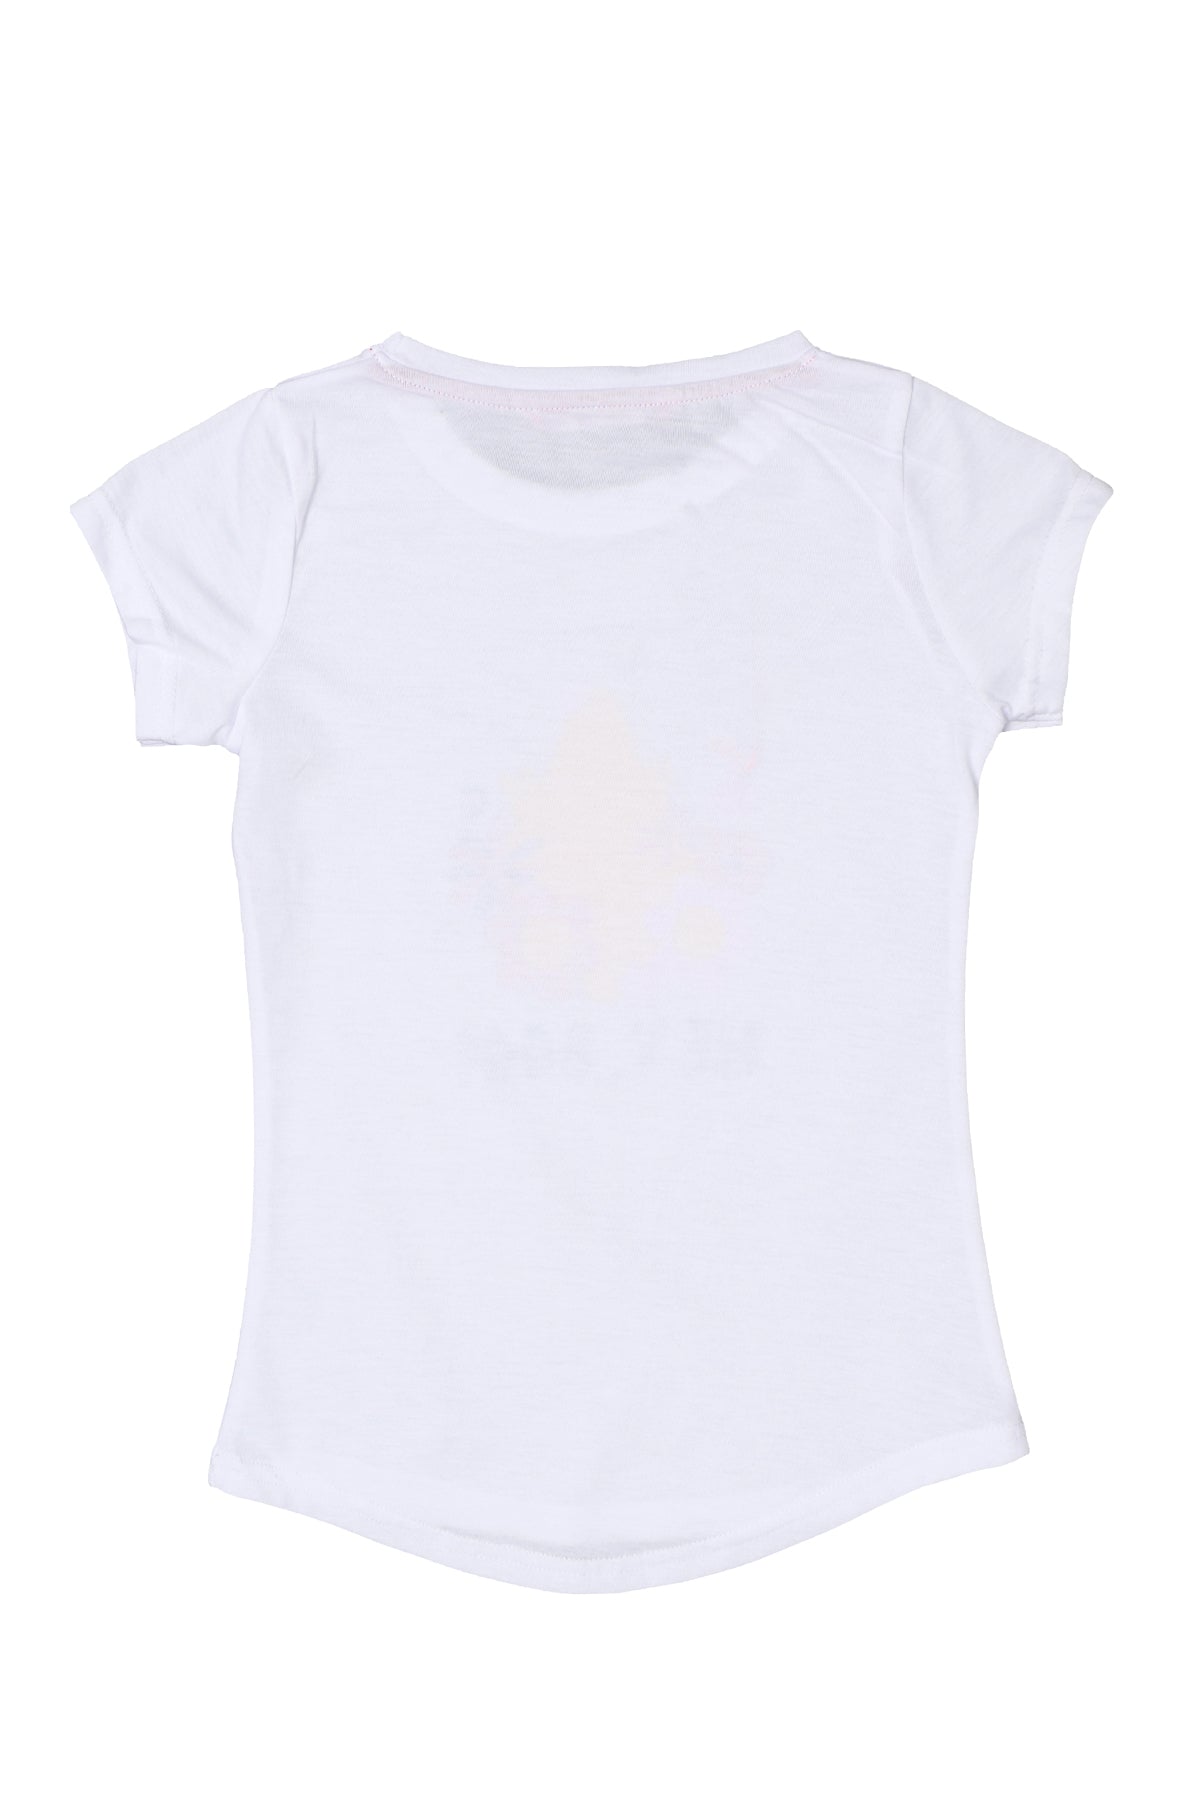 Tween Girl Kids Girl Casual T - Shirt (7915061543136)